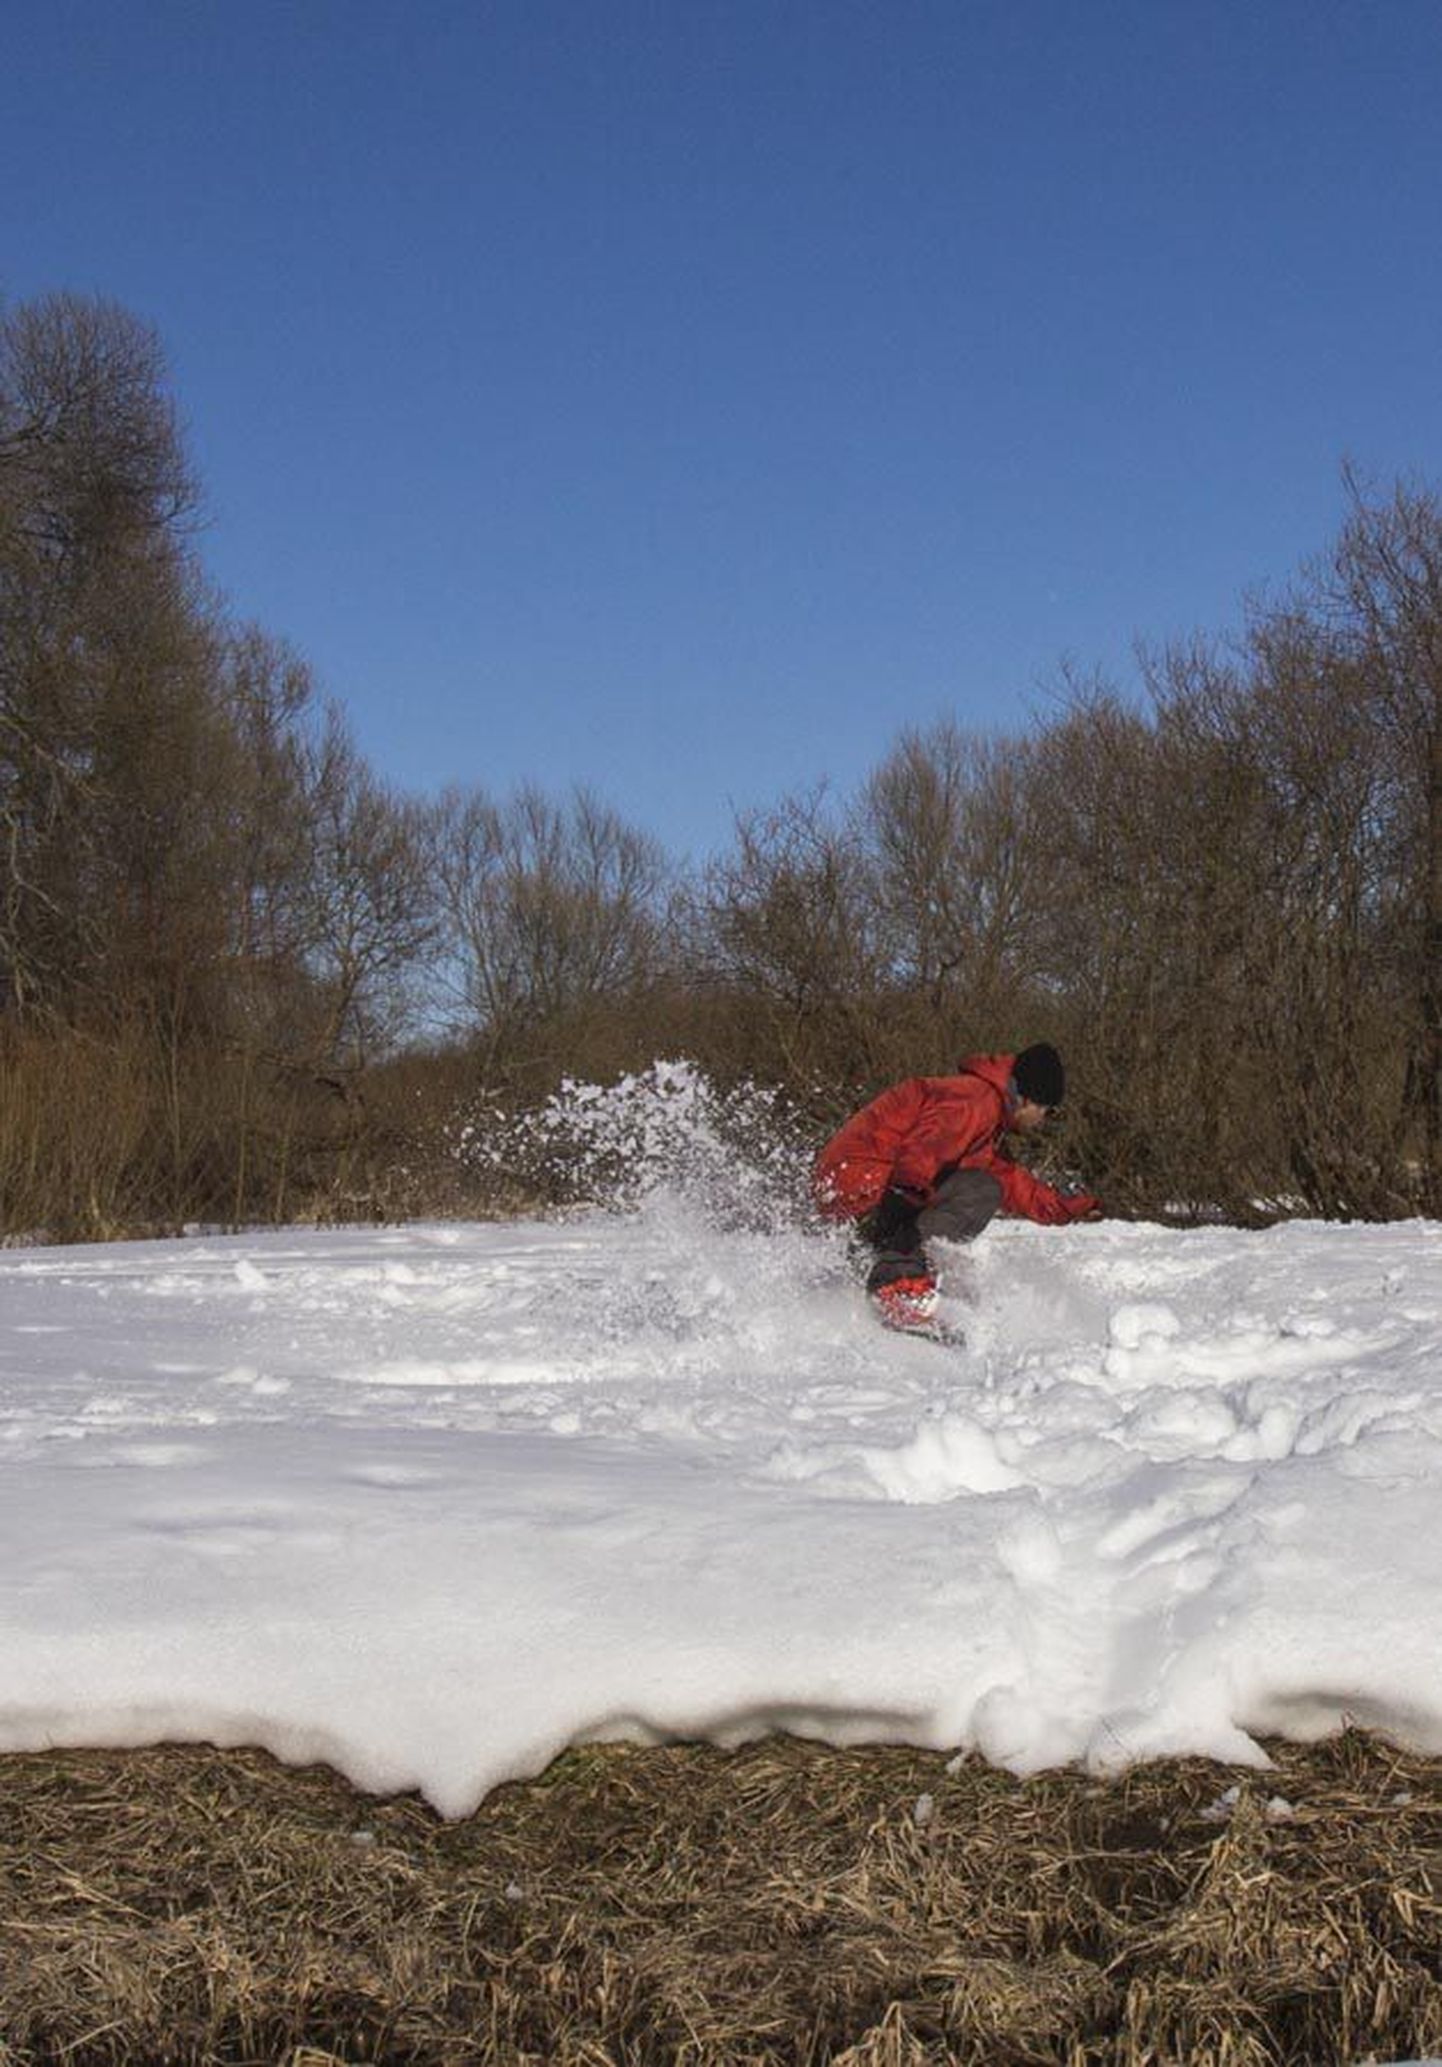 Talv otsa Austrias mäemeistrina tegutsenud Kristjan Tuuleveski naasis kodulinna ning võtab nüüd siinsest lumepargist viimast: ta ehitas oja peale lumest hüppekoha ja trikitab seal koos sõpradega.